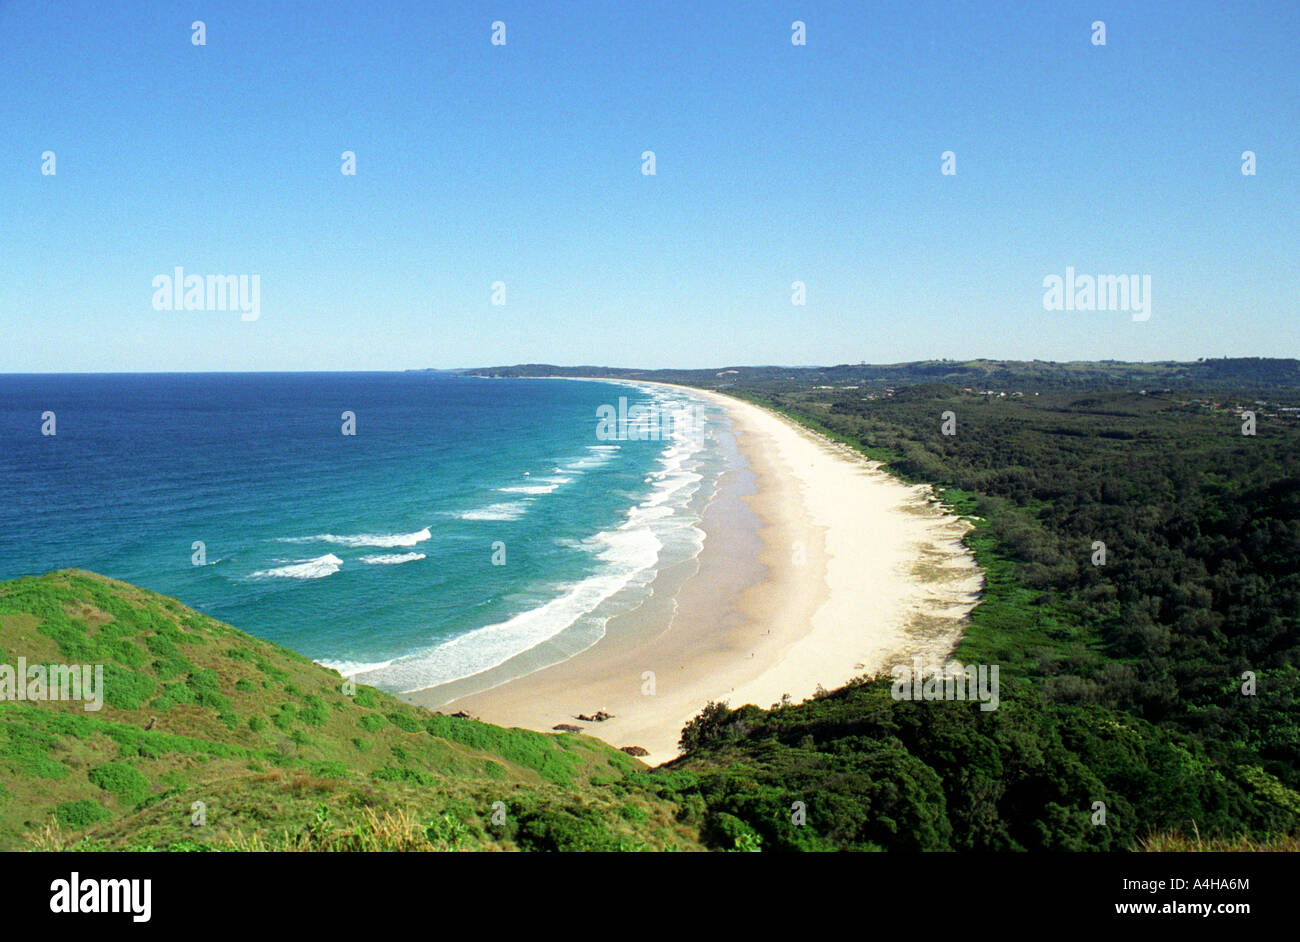 Byron Bay, Tallow beach, Byron Bay, "New South Wales", Australia Stock Photo